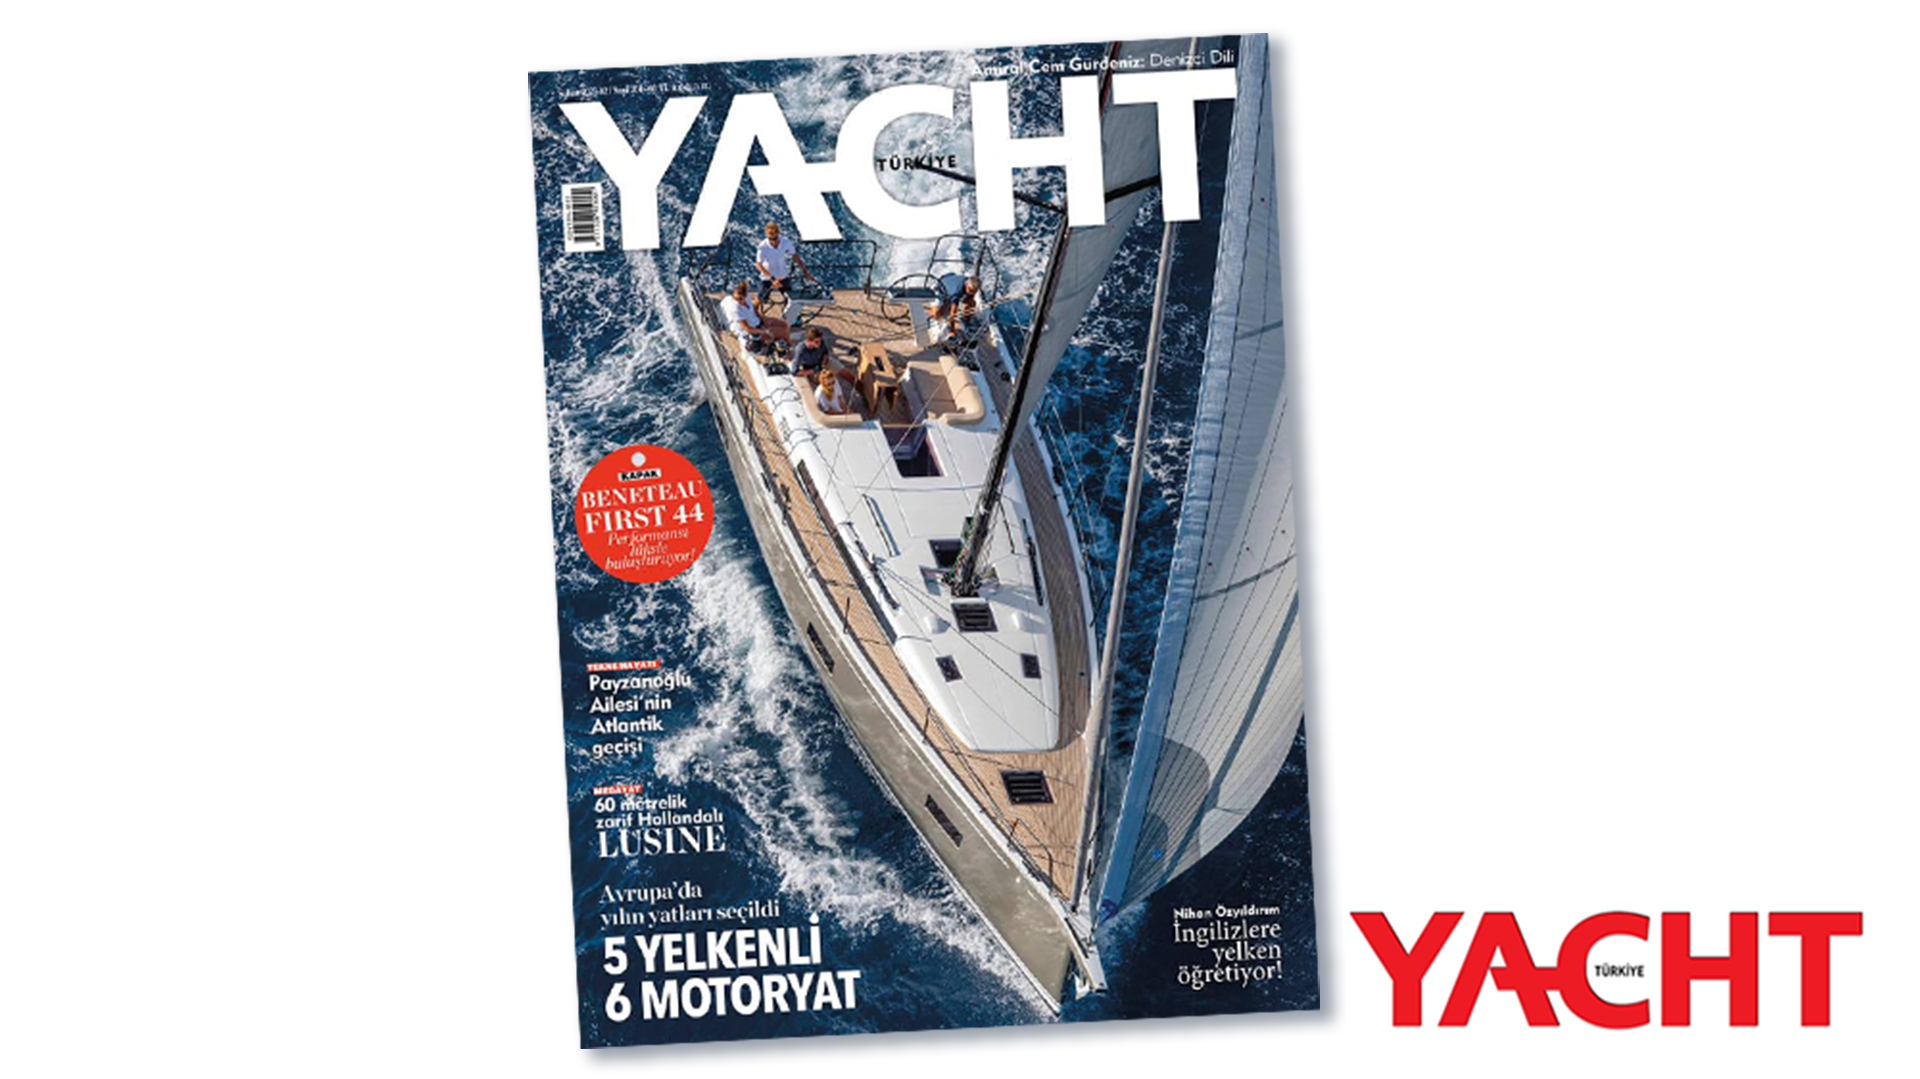 Yacht Türkiye 2023 - Beneteau First 44 performansı lüksle buluşturuyor!